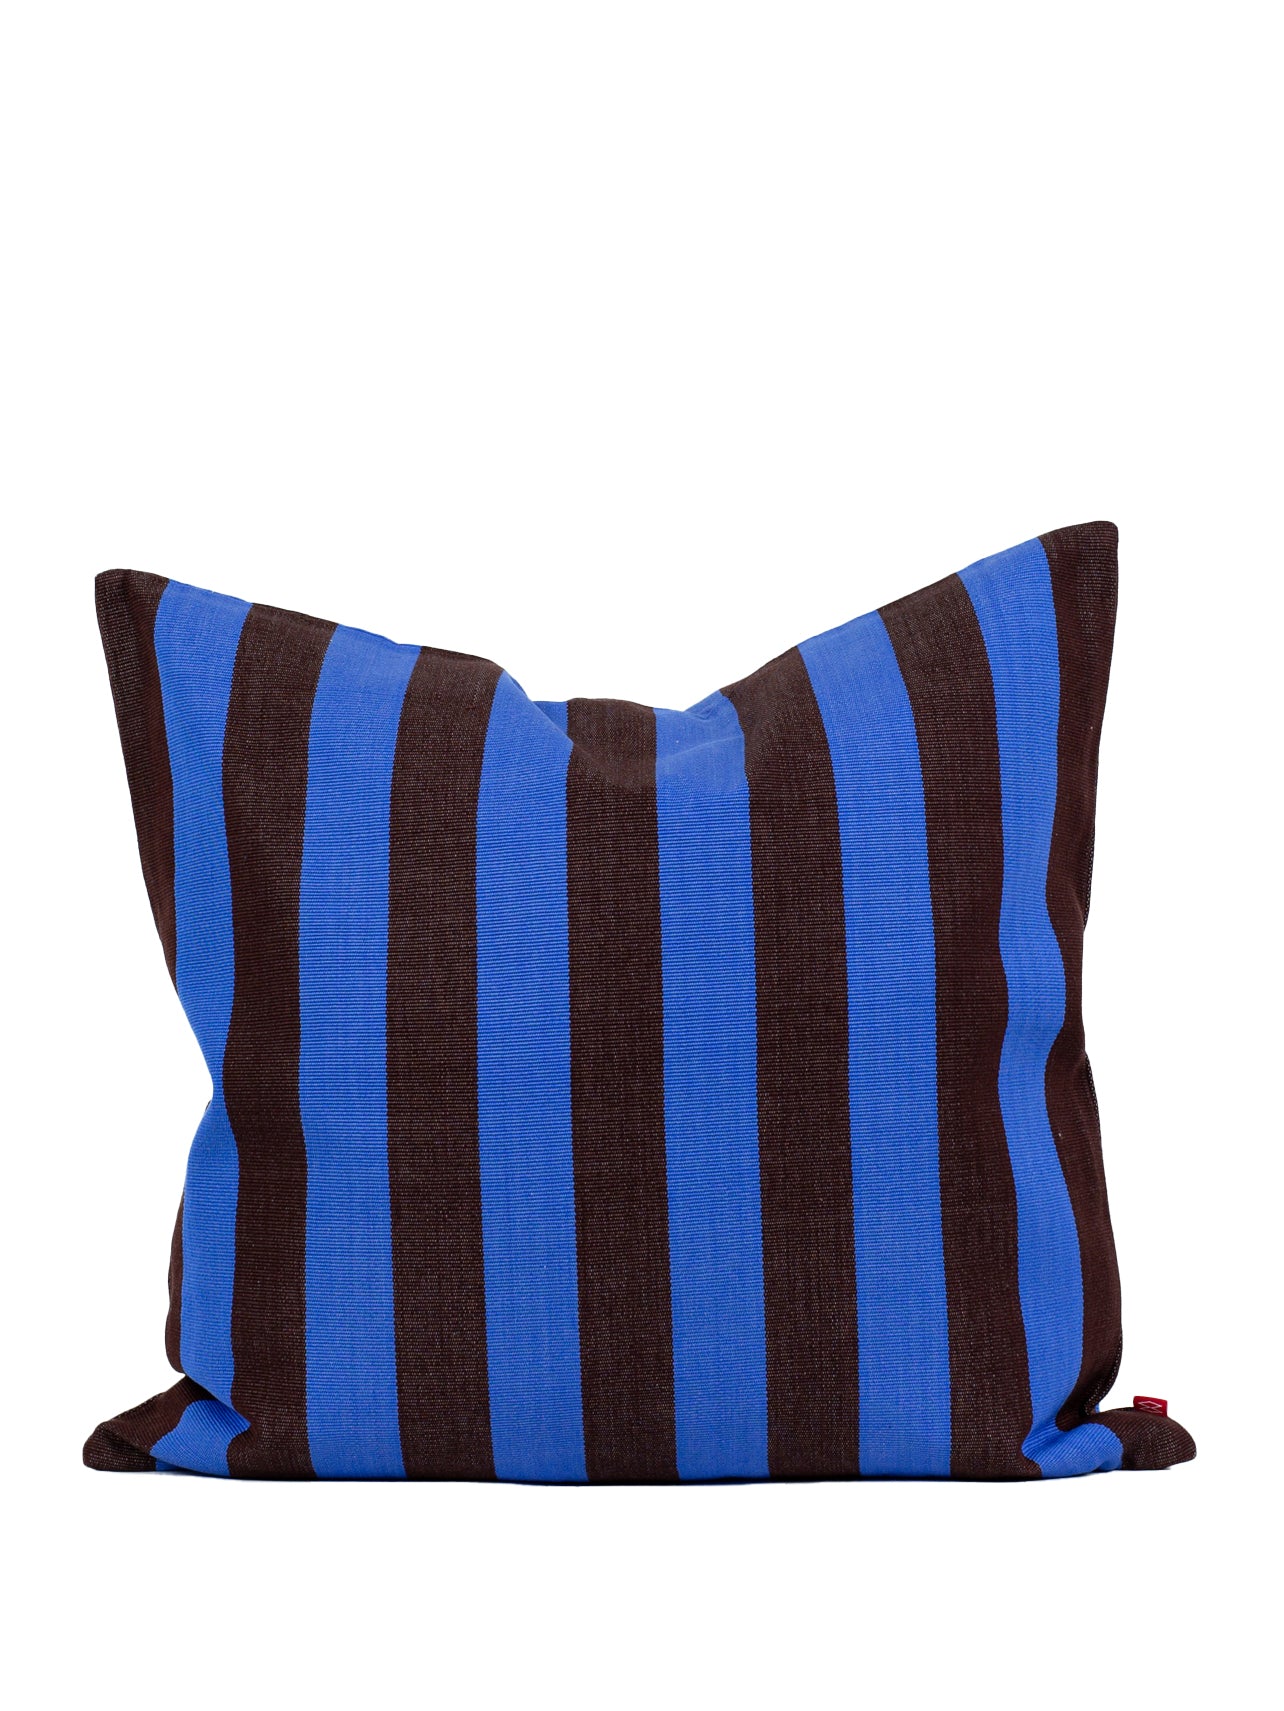 EMANUELA Cushion cover (50x50cm), brown-blue